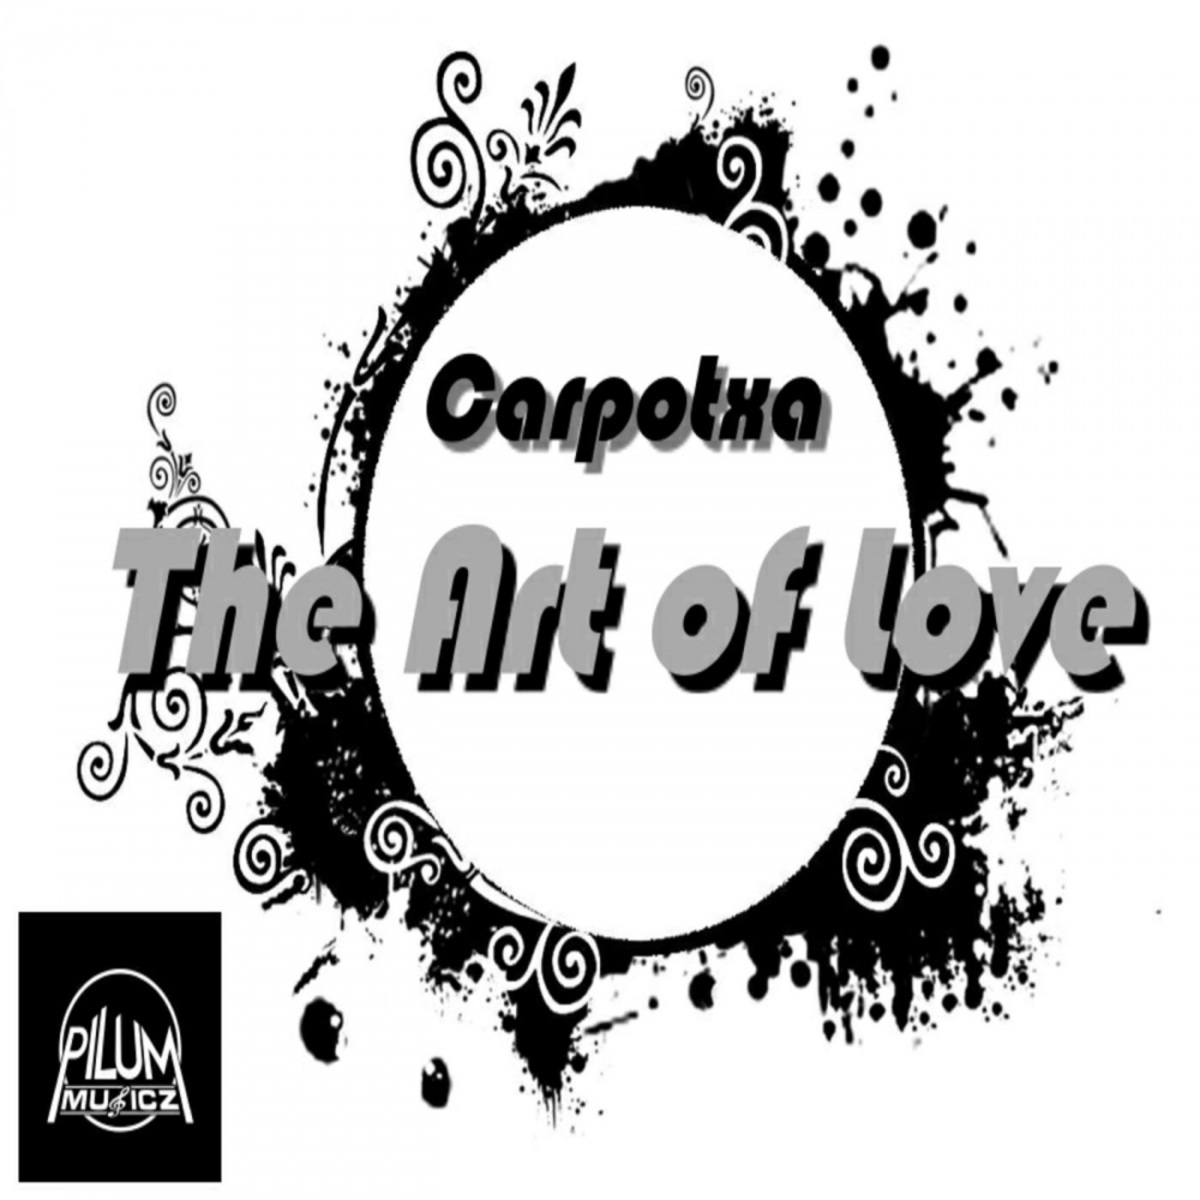 Carpotxa - The Art of Love / Pilum Musicz